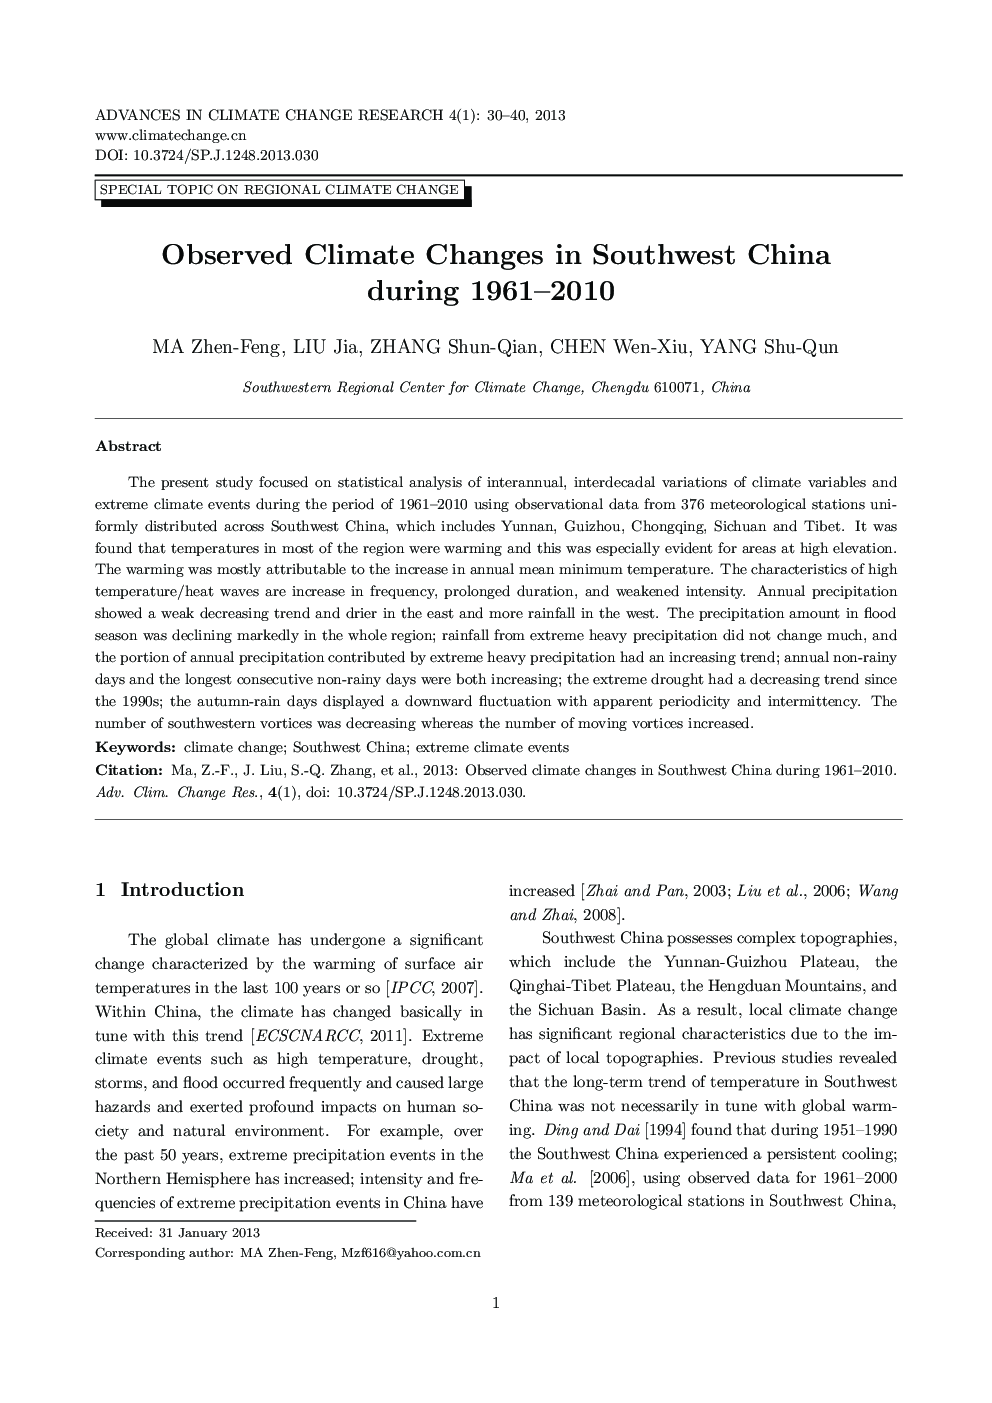 تغییرات اقلیمی مشاهده شده در جنوب غربی چین طی سال های 1961 و 2010 